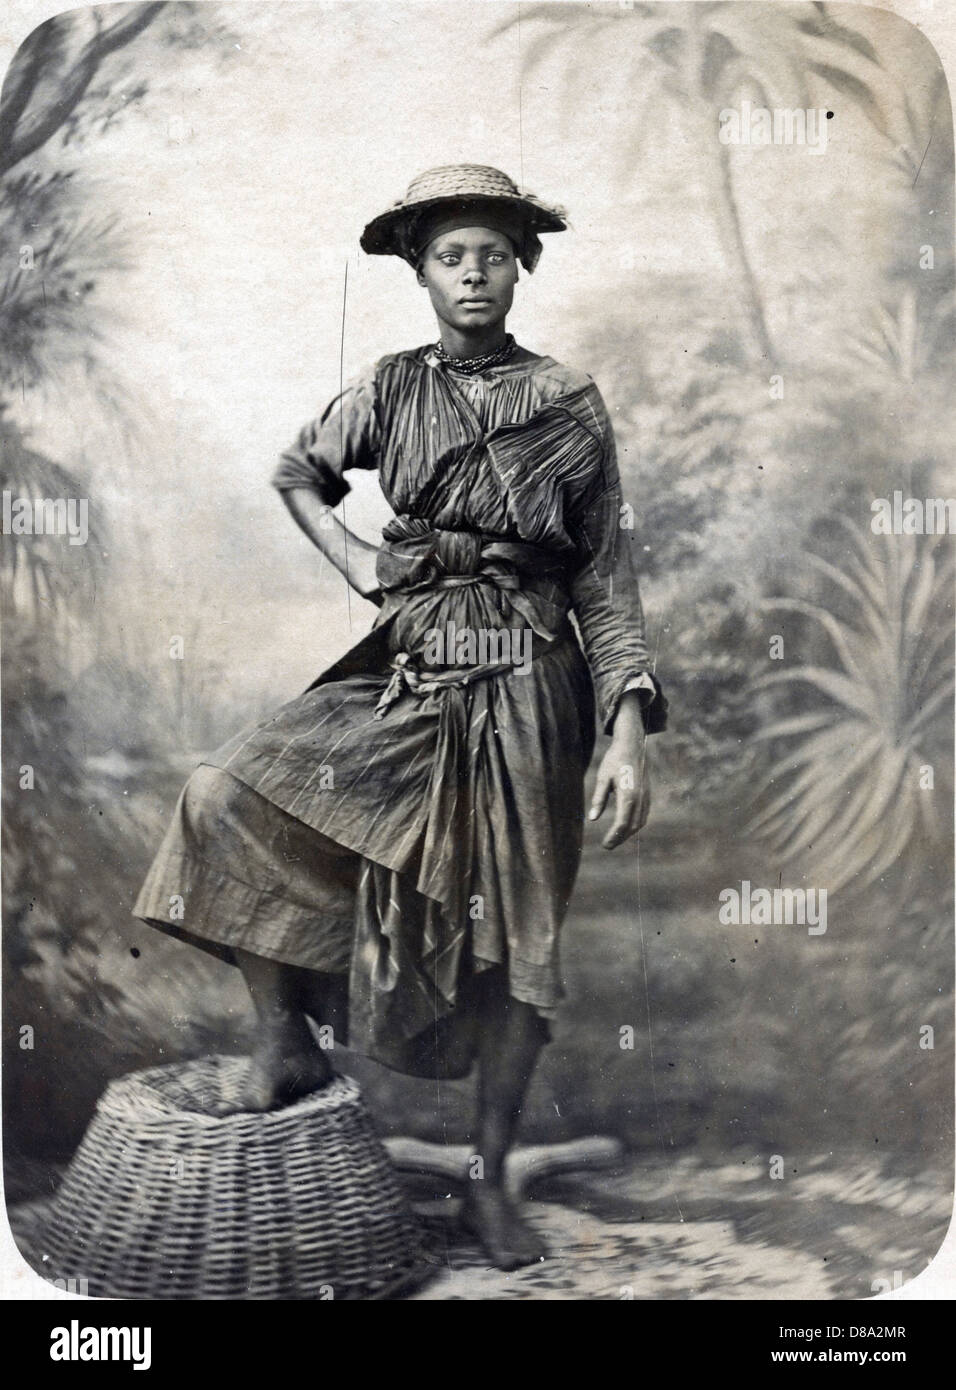 Negresse Charbonniere, Martinique, ca 1880, by Gaston Fabre Stock Photo